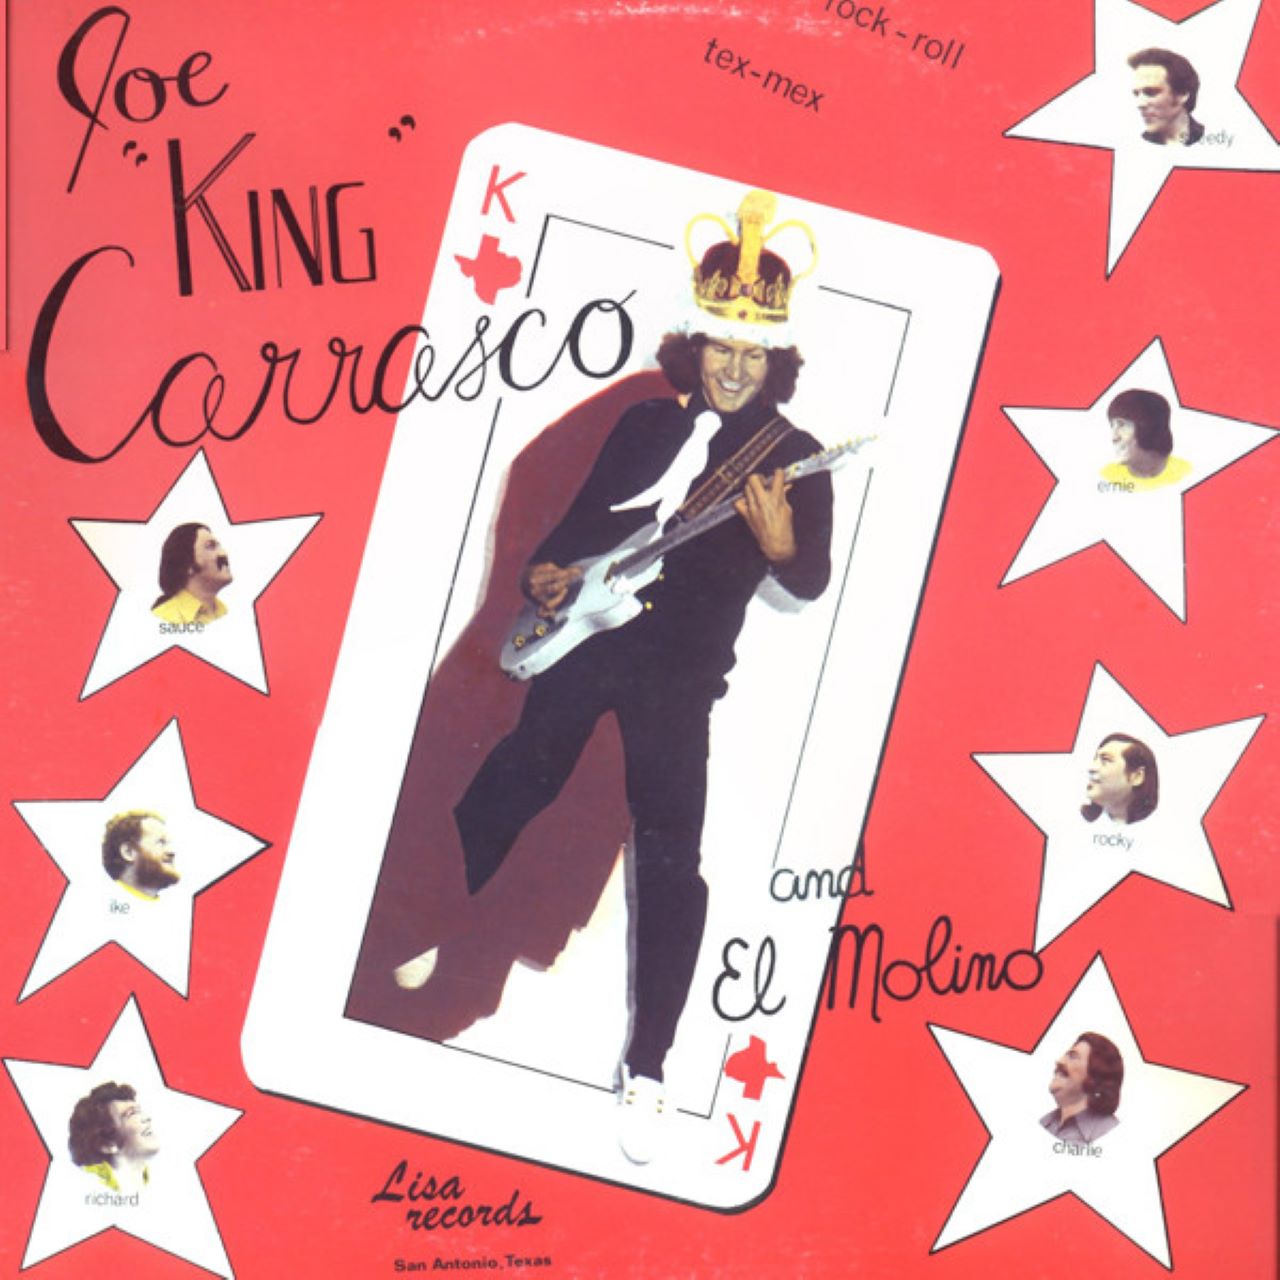 Joe King Carrasco And El Molino Band - Joe King Carrasco And El Molino Band cover album